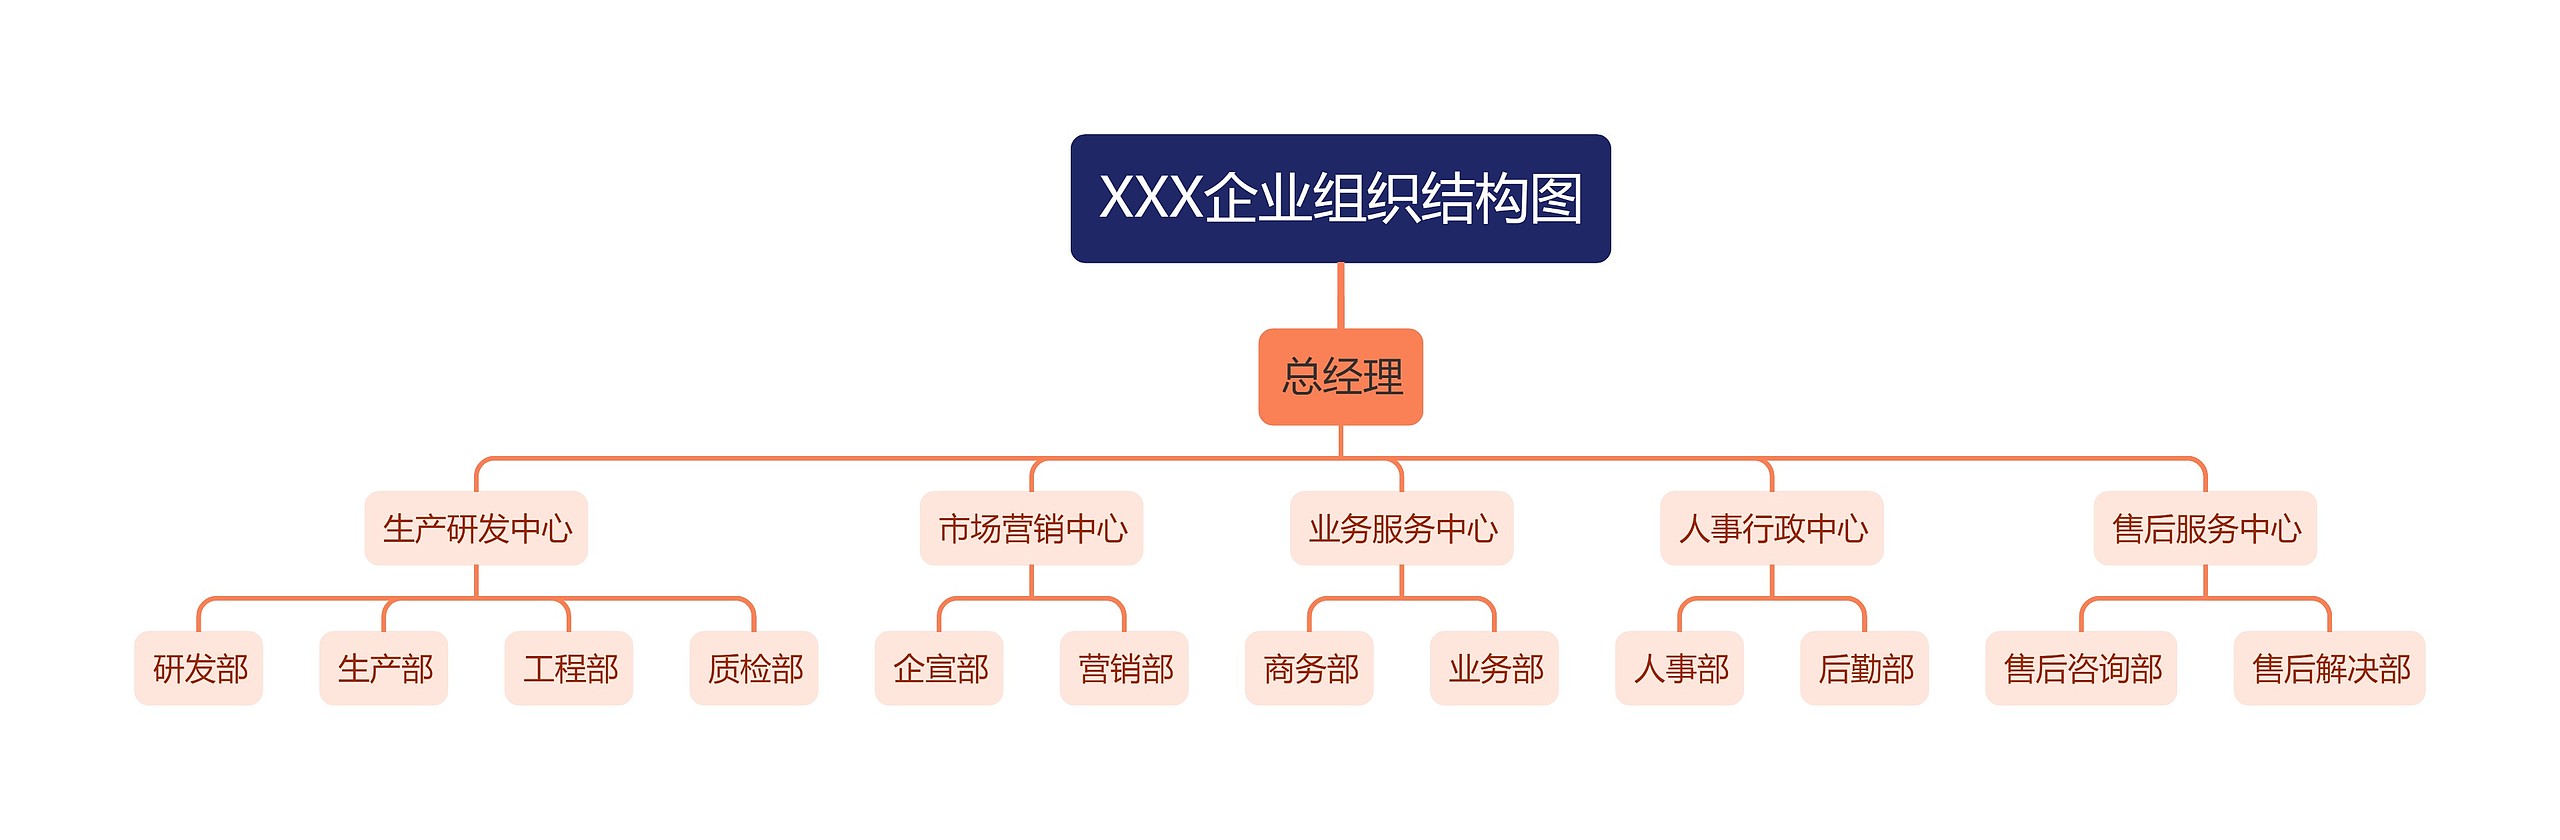 XXX企业组织结构图思维导图